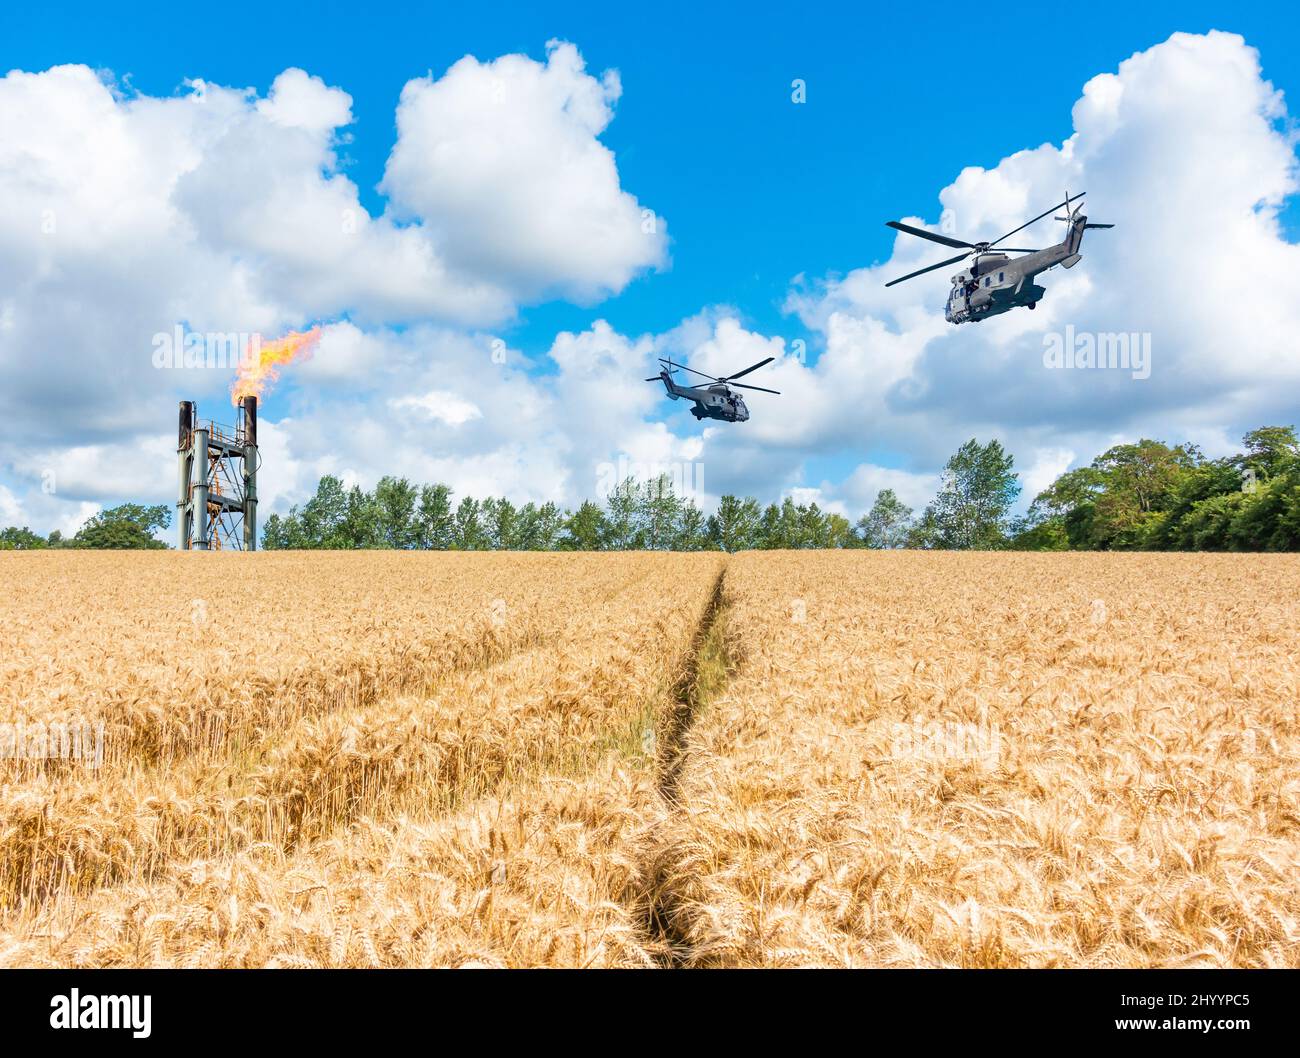 Militärhubschrauber fliegen über Weizenfeld und Gaskamin. Konzeptbild: Ukraine Russland-Konflikt, Weizen, Lebensmittelknappheit, russische Sanktionen... Stockfoto